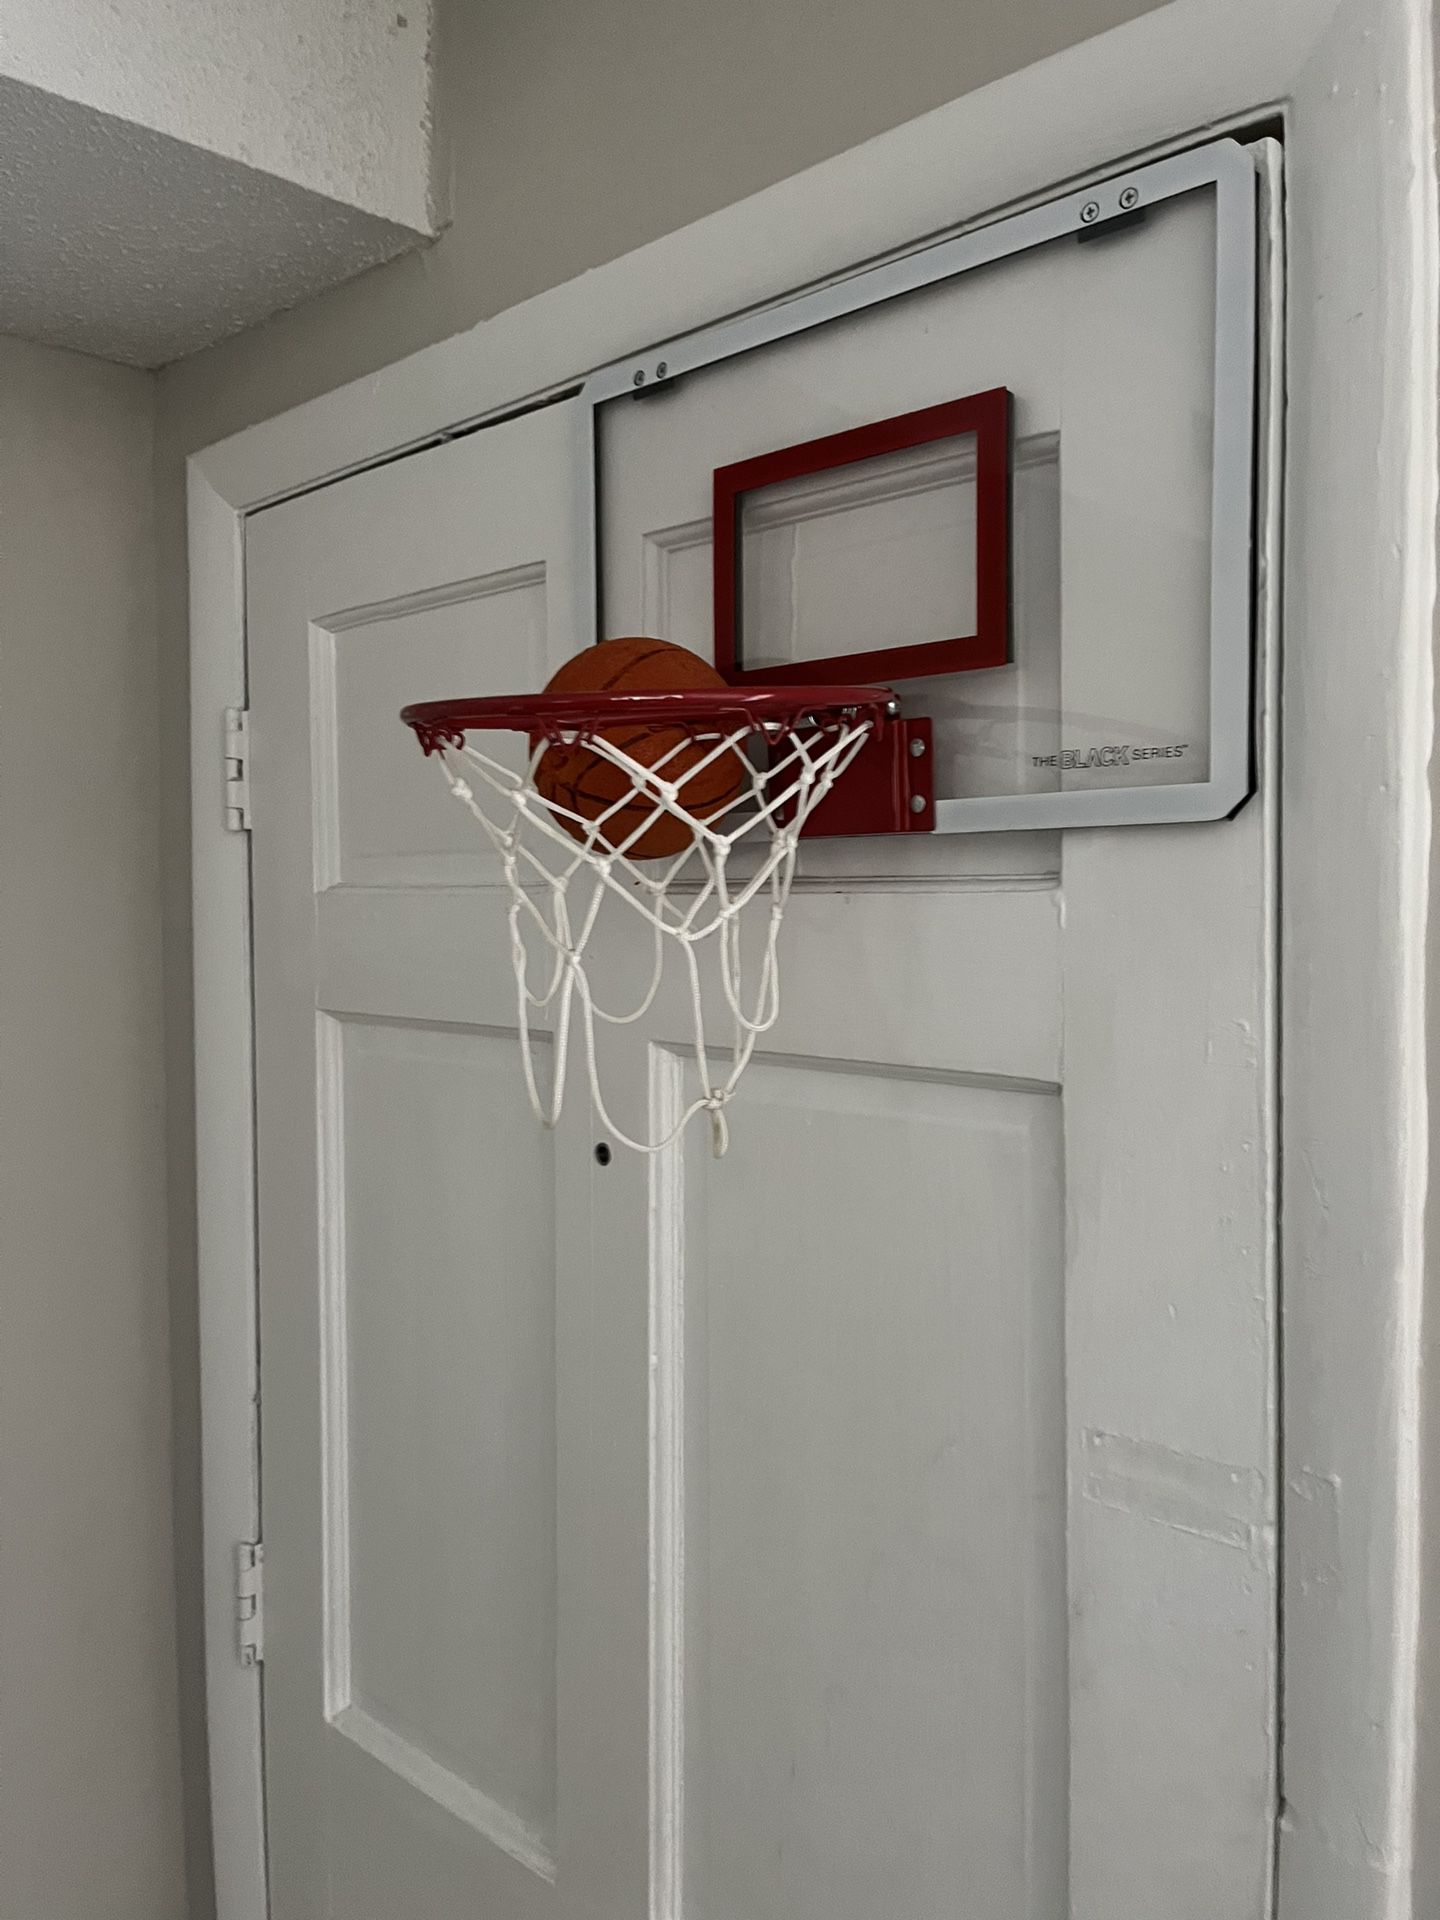 Door basketball Hoop 